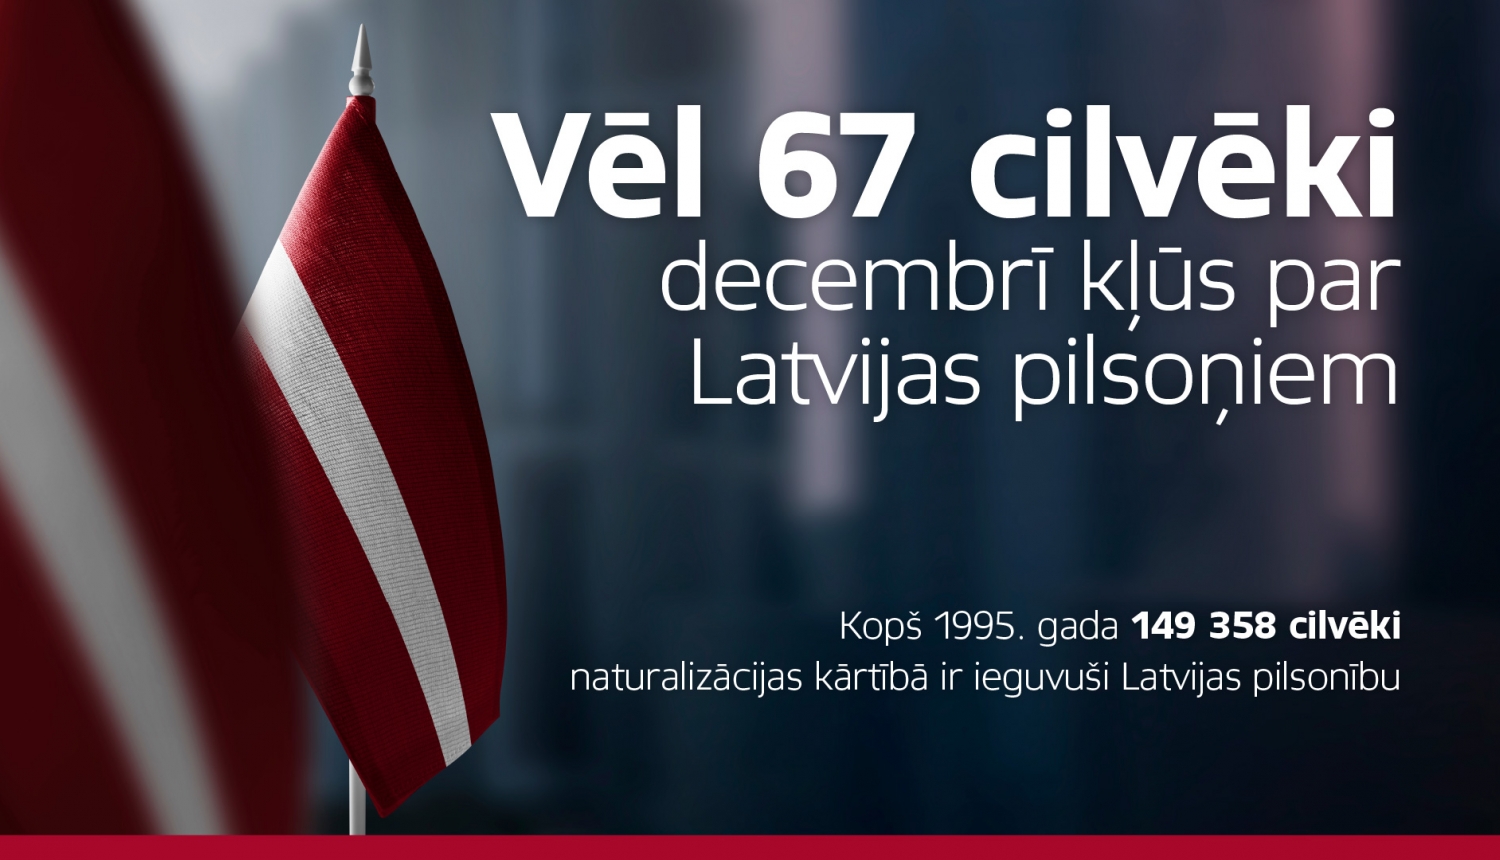 Vēl 67 cilvēki decembrī kļūs par Latvijas pilsoņiem